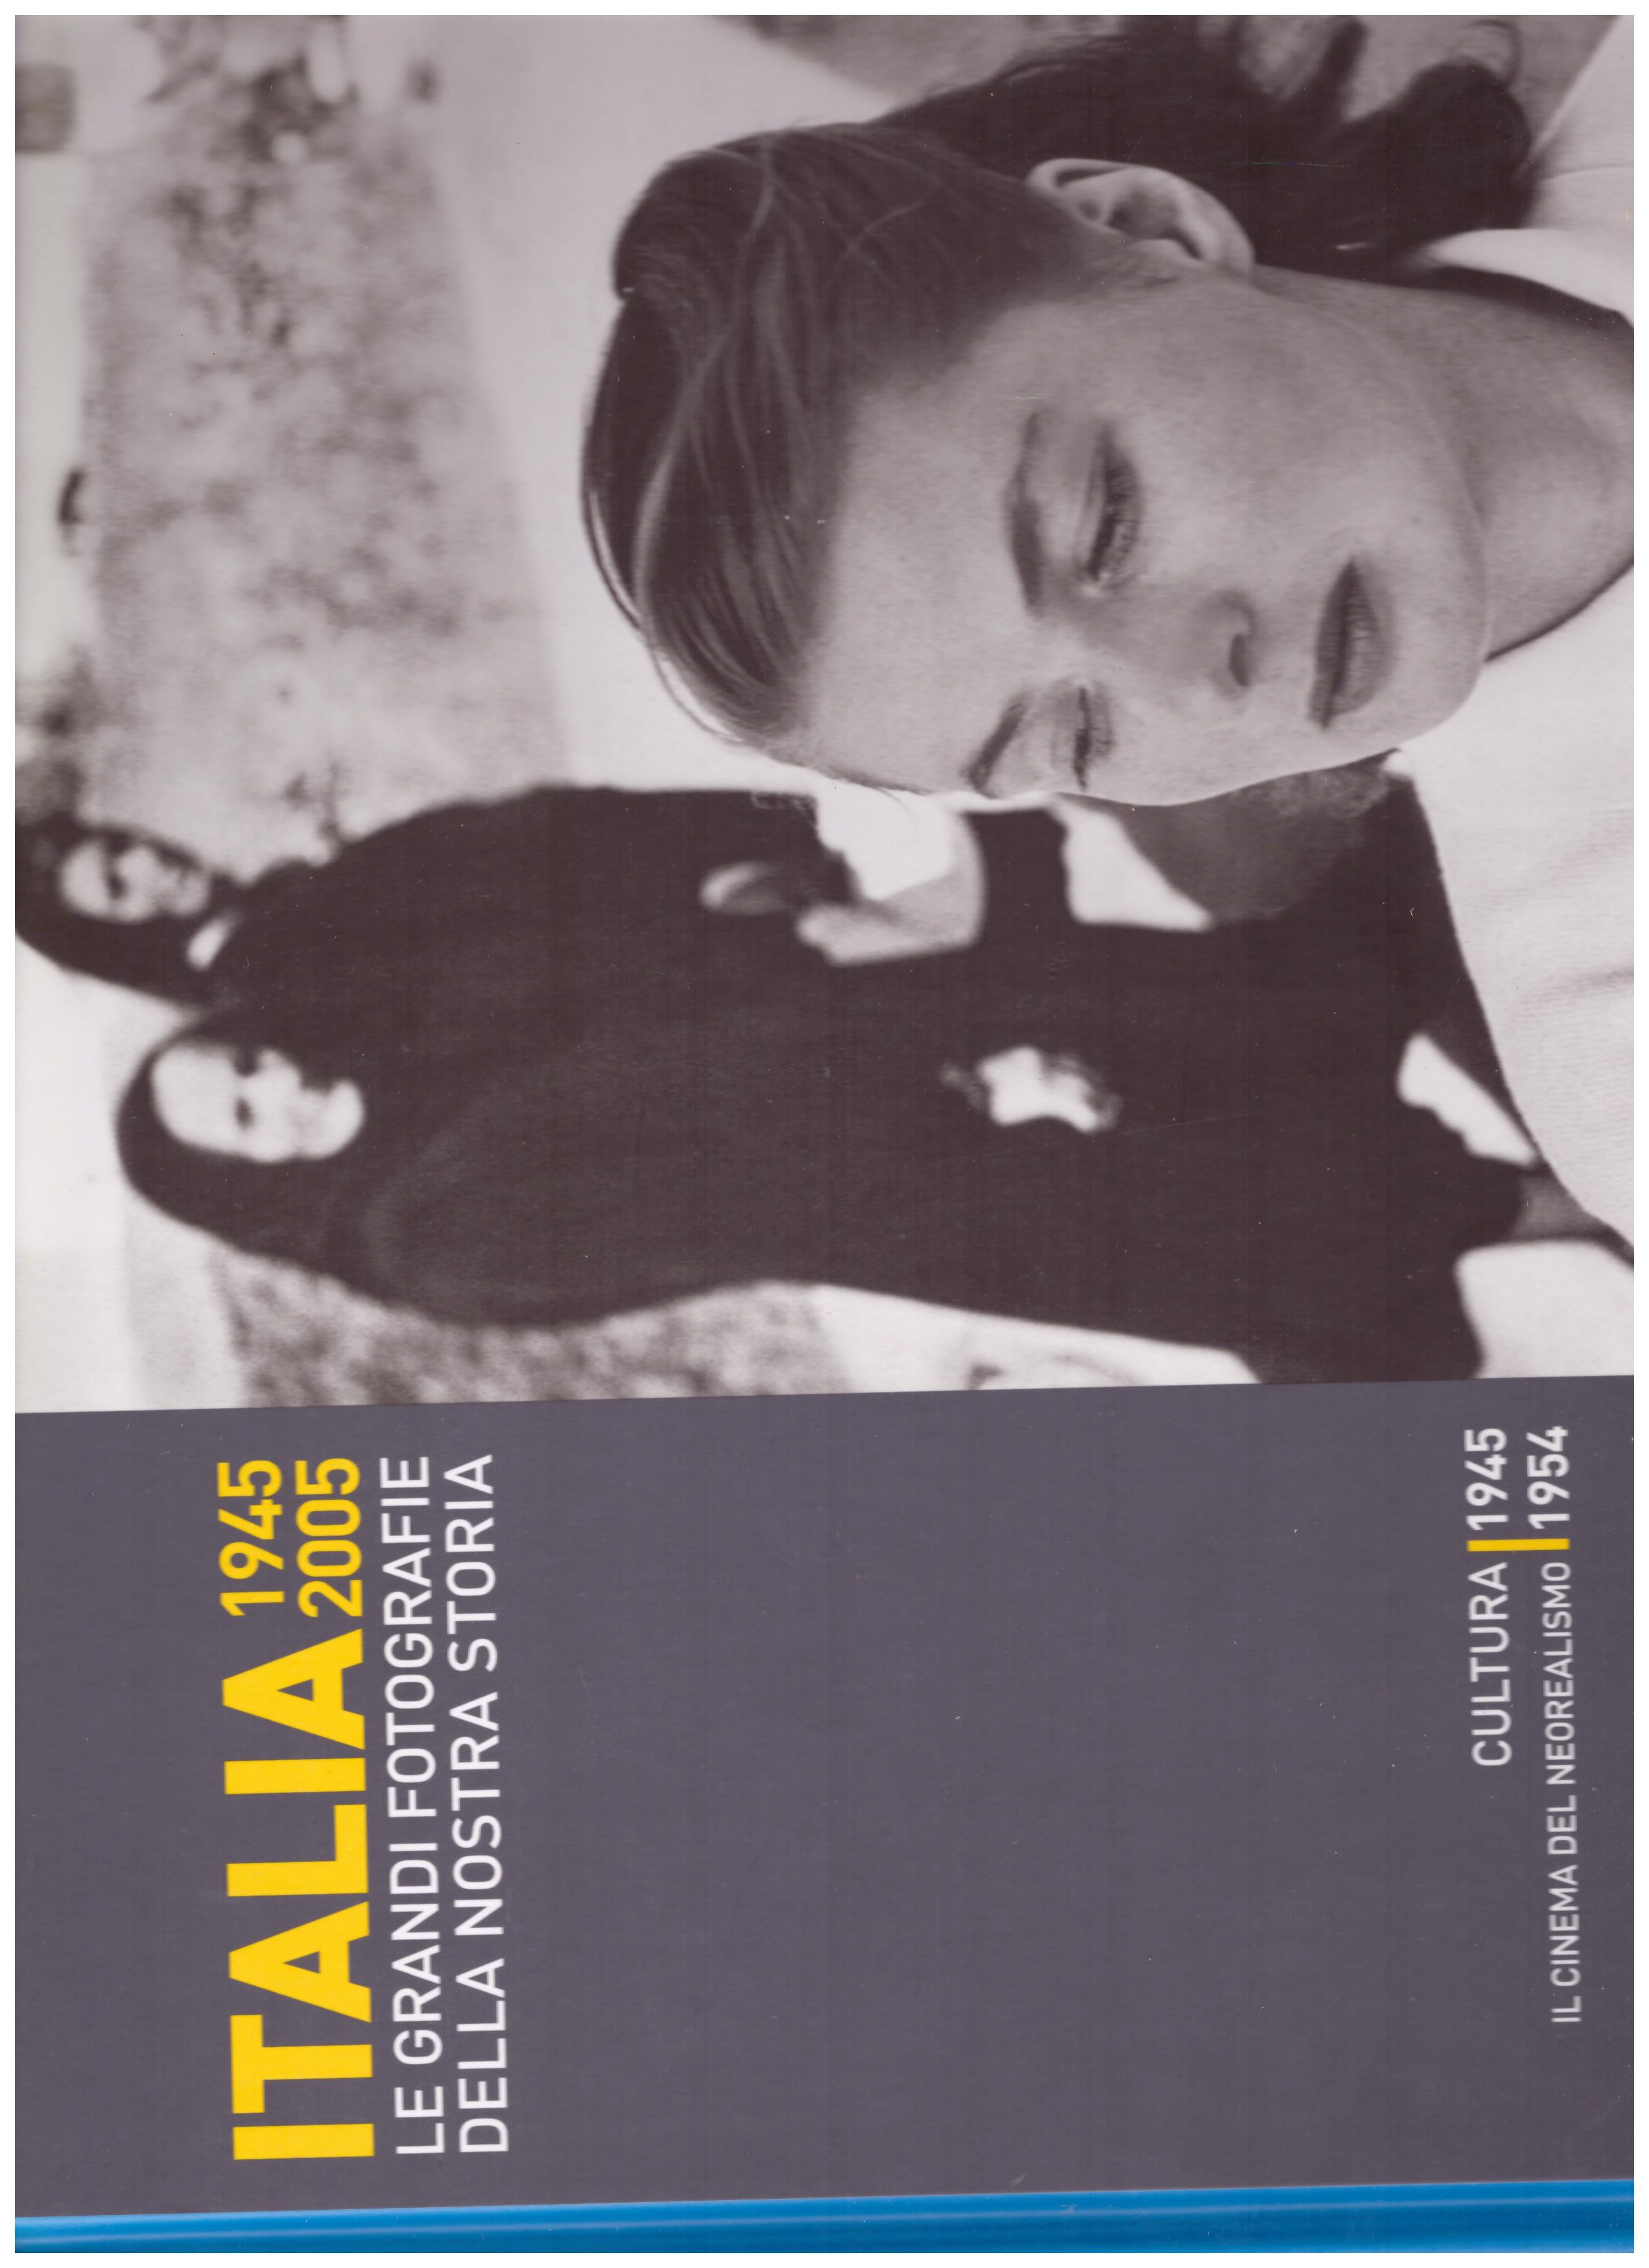 Titolo: Italia 1945-2005 le grandi fotografie della nostra storia, cultura 1945 , il cinema del neorealismo 1954 Autore : AA.VV.   Editore: hachette, 2006